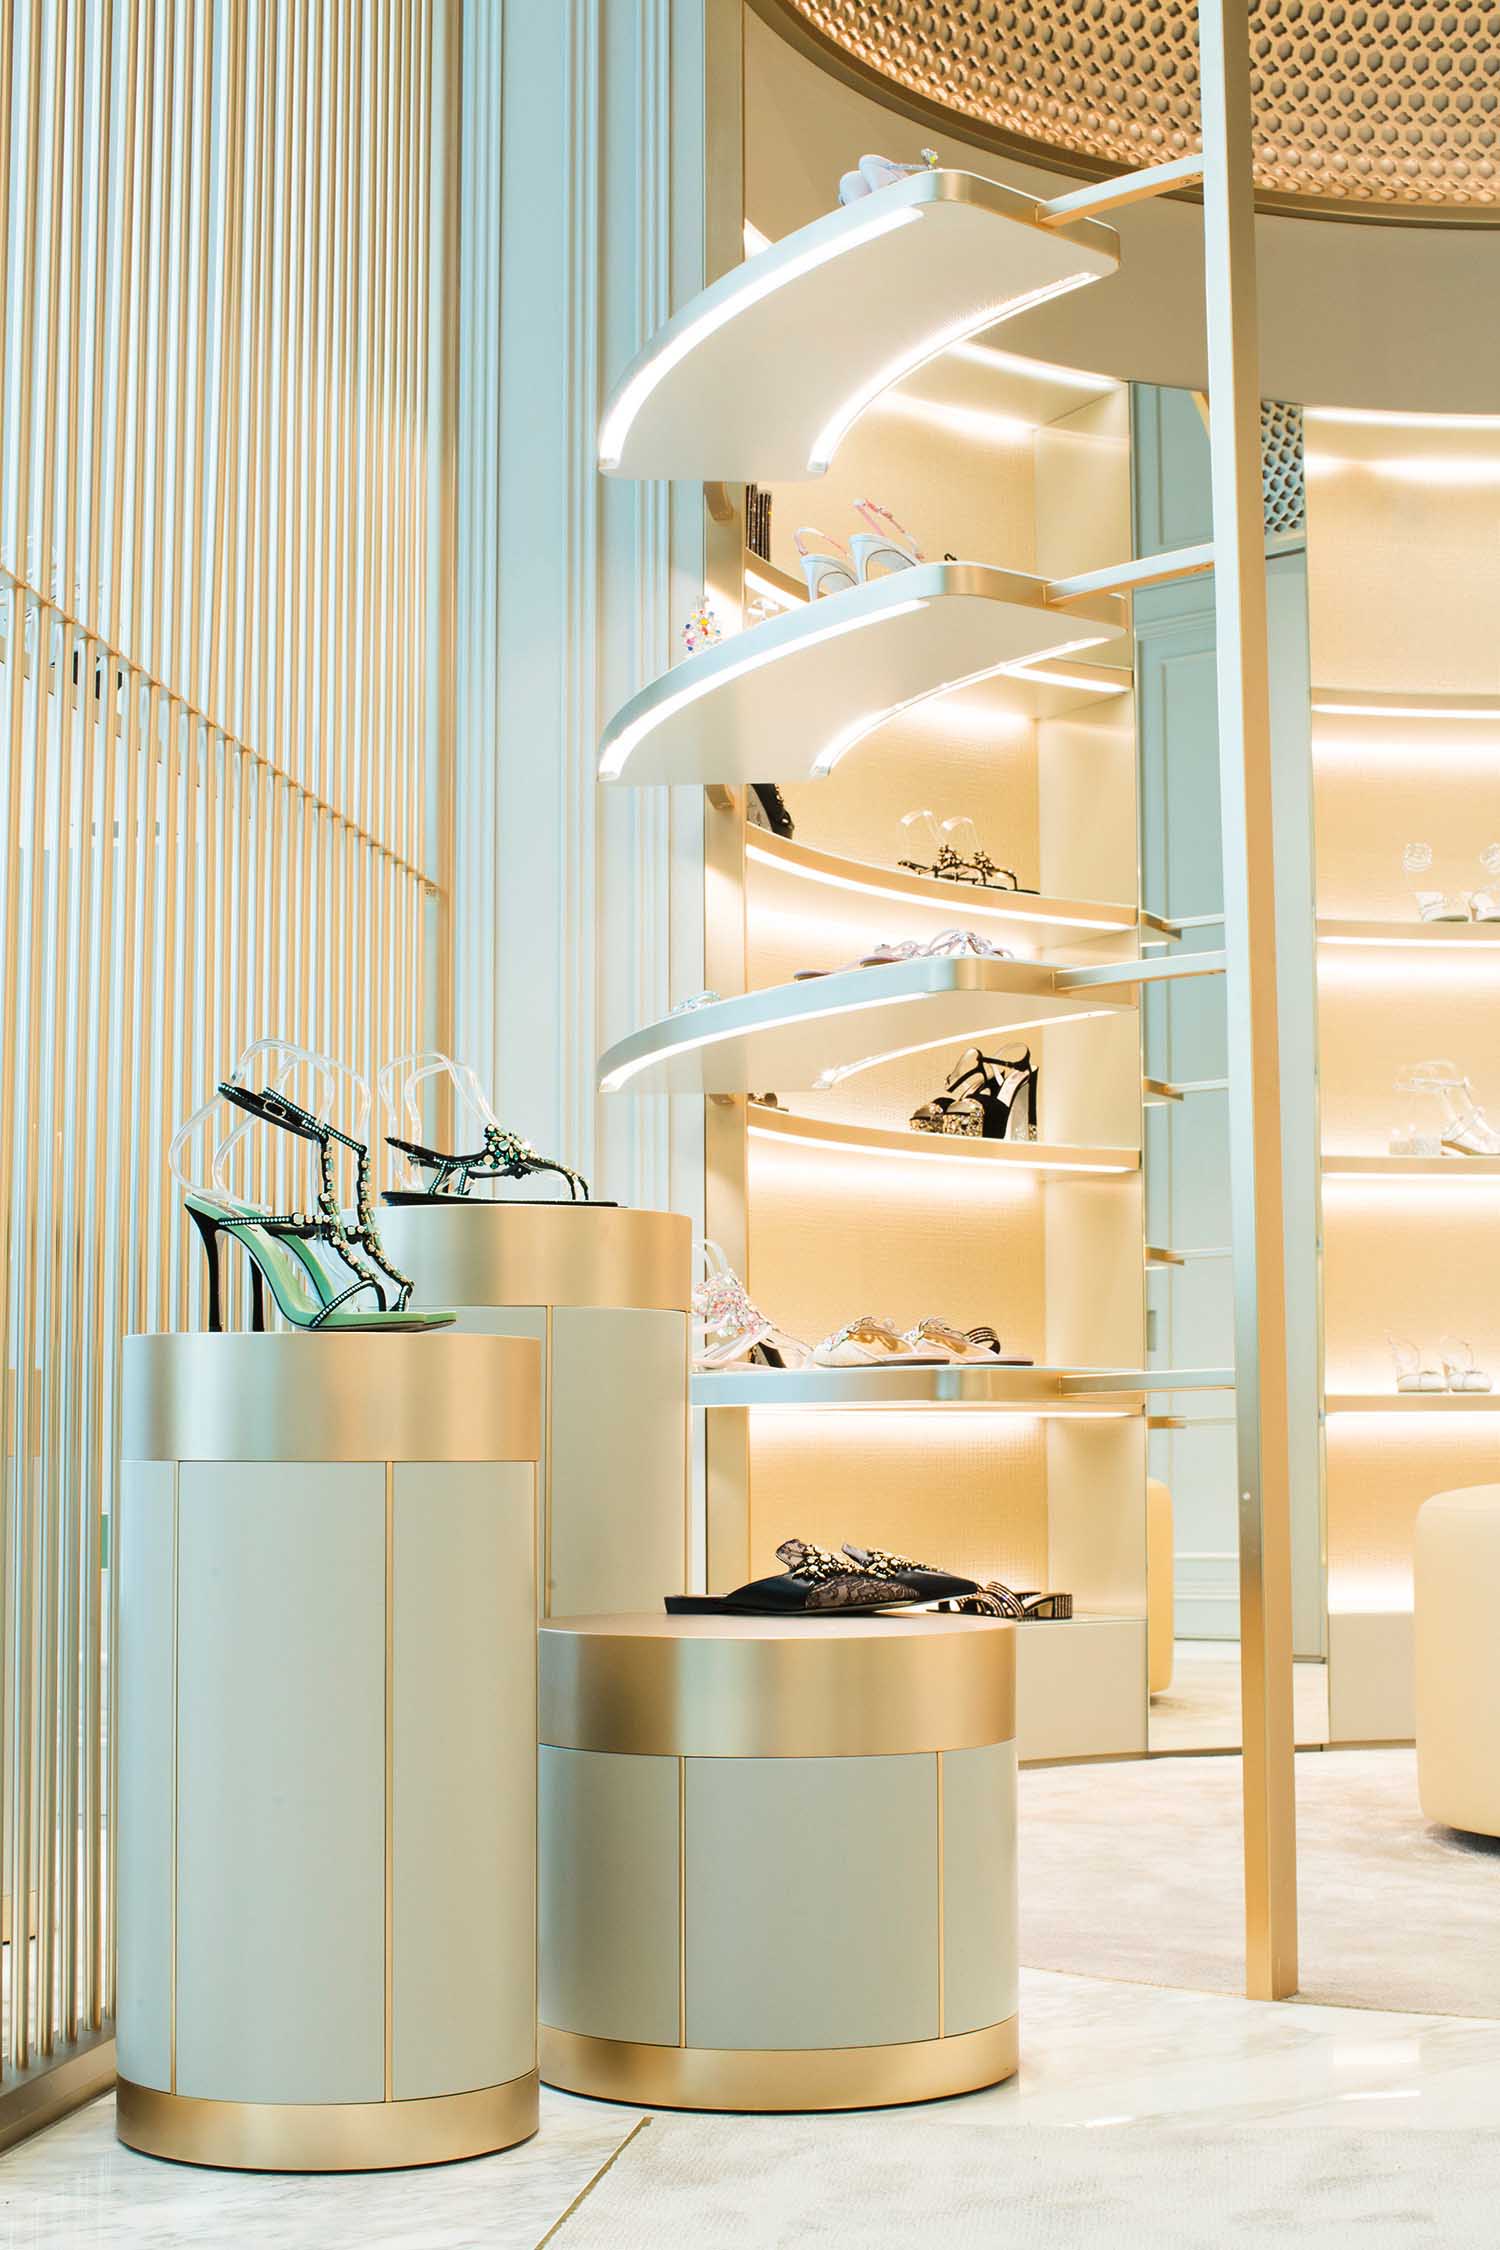 Boutique di René Caovilla, Dubai, EAU - © Courtesy Caovilla Per l'interior design sono stati scelti materiali della tradizione veneziana,  come legni pregiati,  cristalli e marmi, abbinati  a colori caldi ed eleganti.